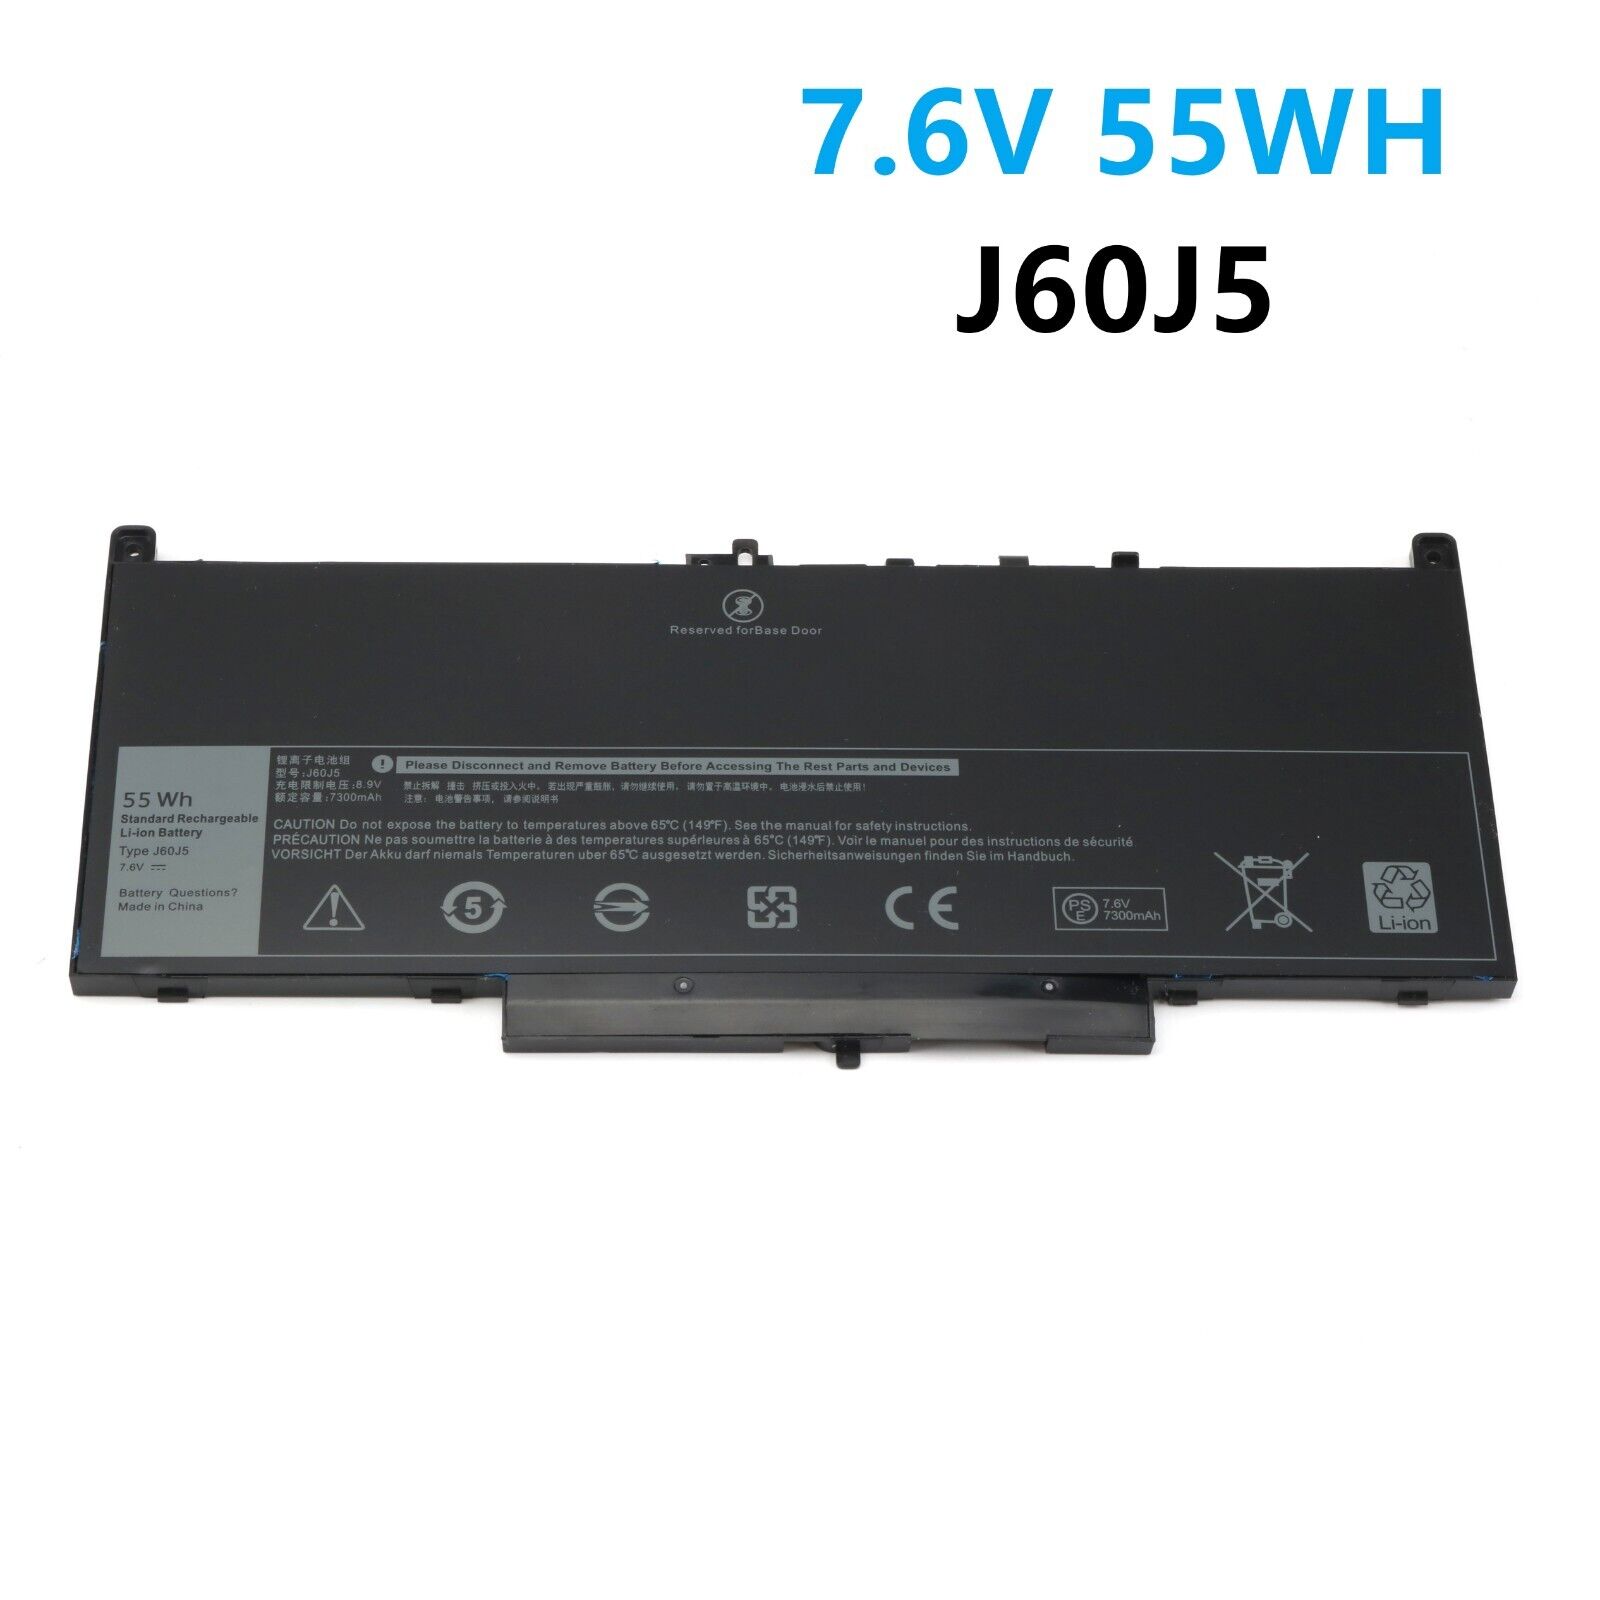 55Wh J60J5 Battery For Dell Latitude E7270 P26S001 E7470 P61G001 0MC34Y WYWJ2